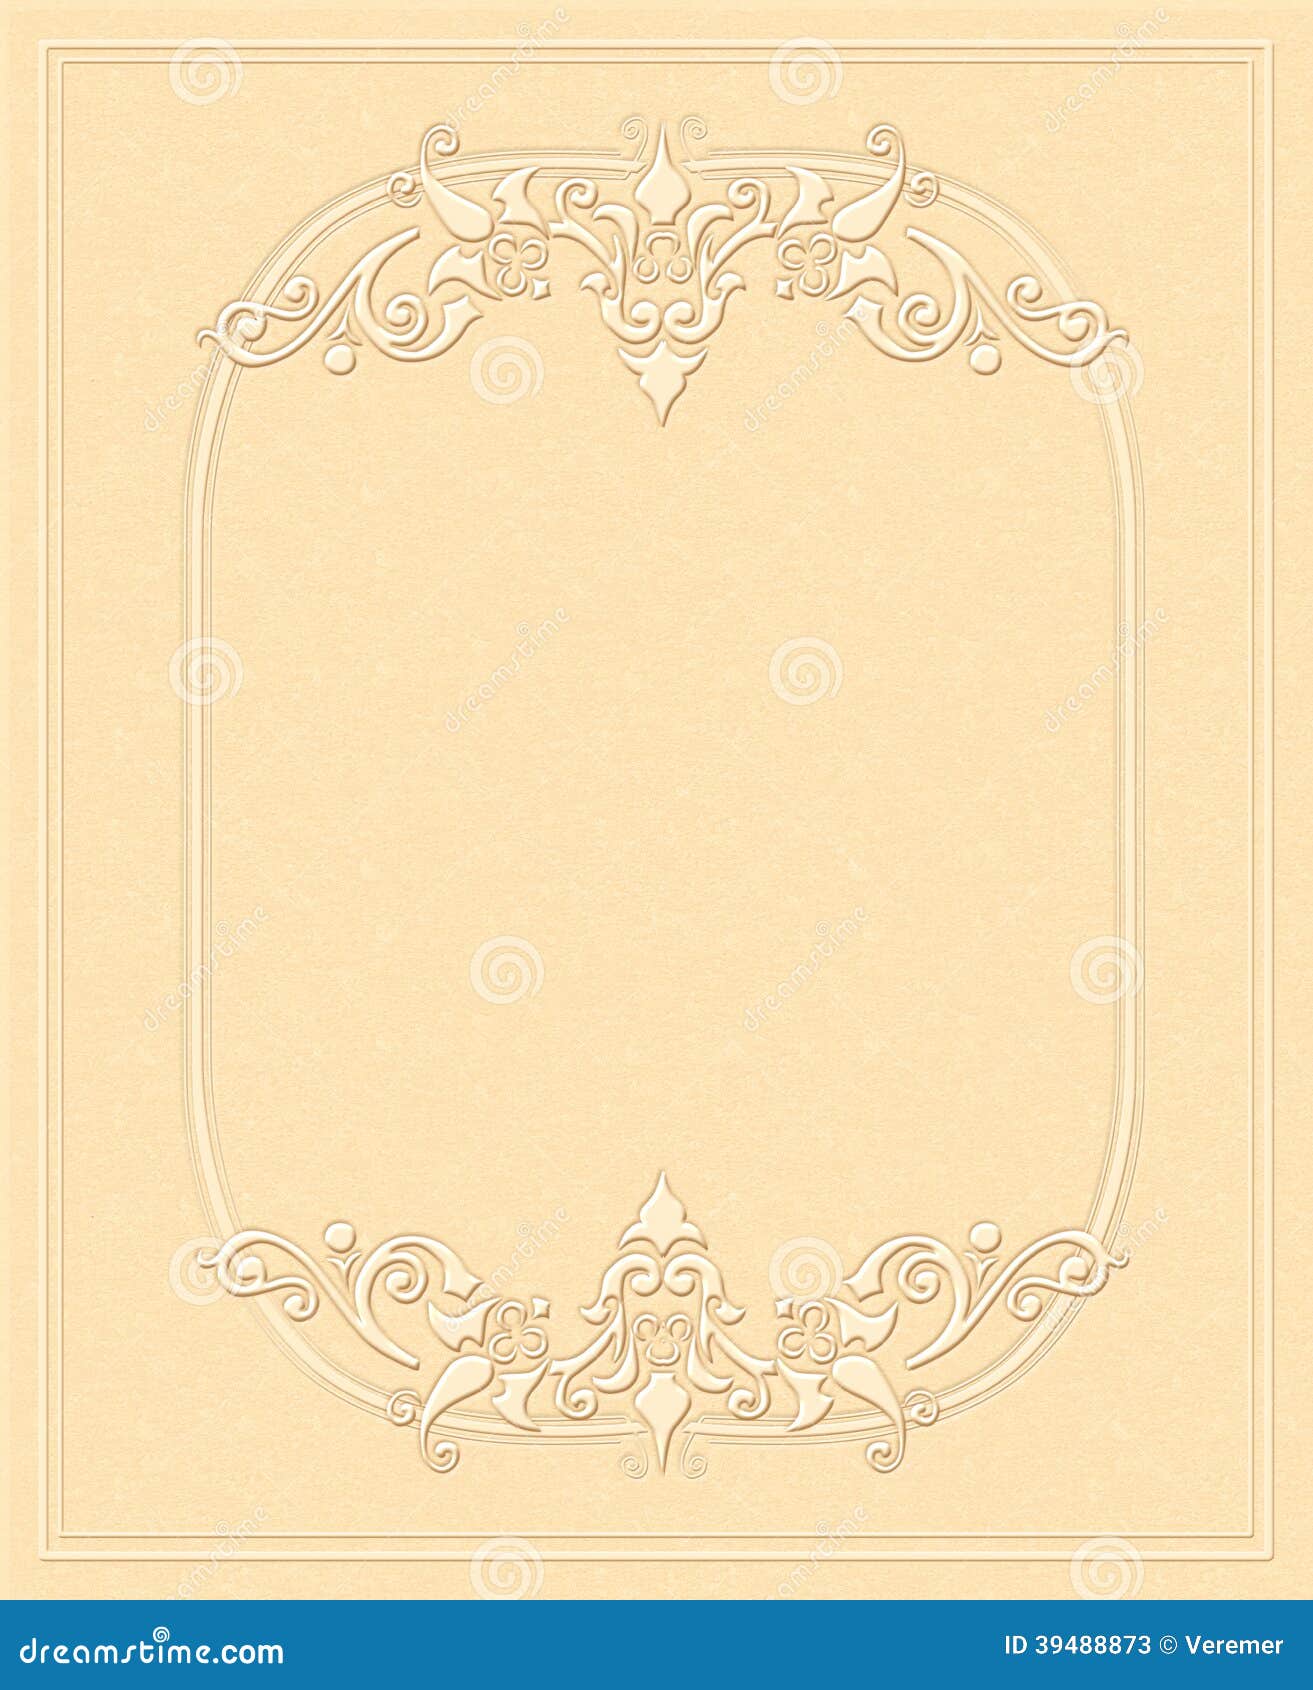 Weinlesehintergrund Prageartiges Papier Antike Grusskarte Einladung Mit Blumenverzierungen Stock Abbildung Illustration Von Prageartiges Einladung